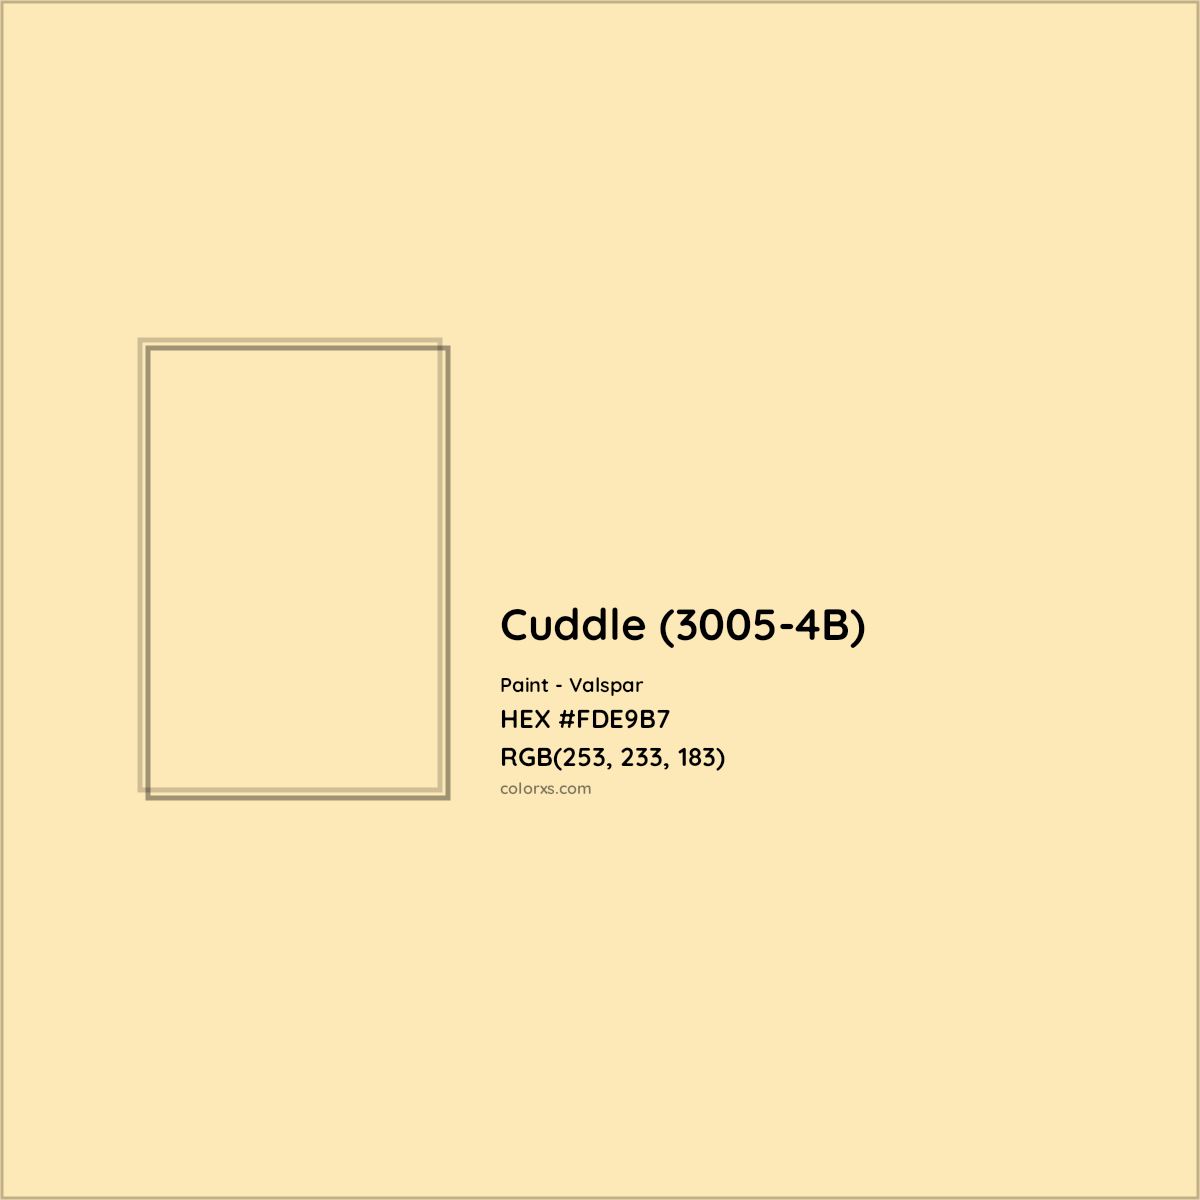 HEX #FDE9B7 Cuddle (3005-4B) Paint Valspar - Color Code